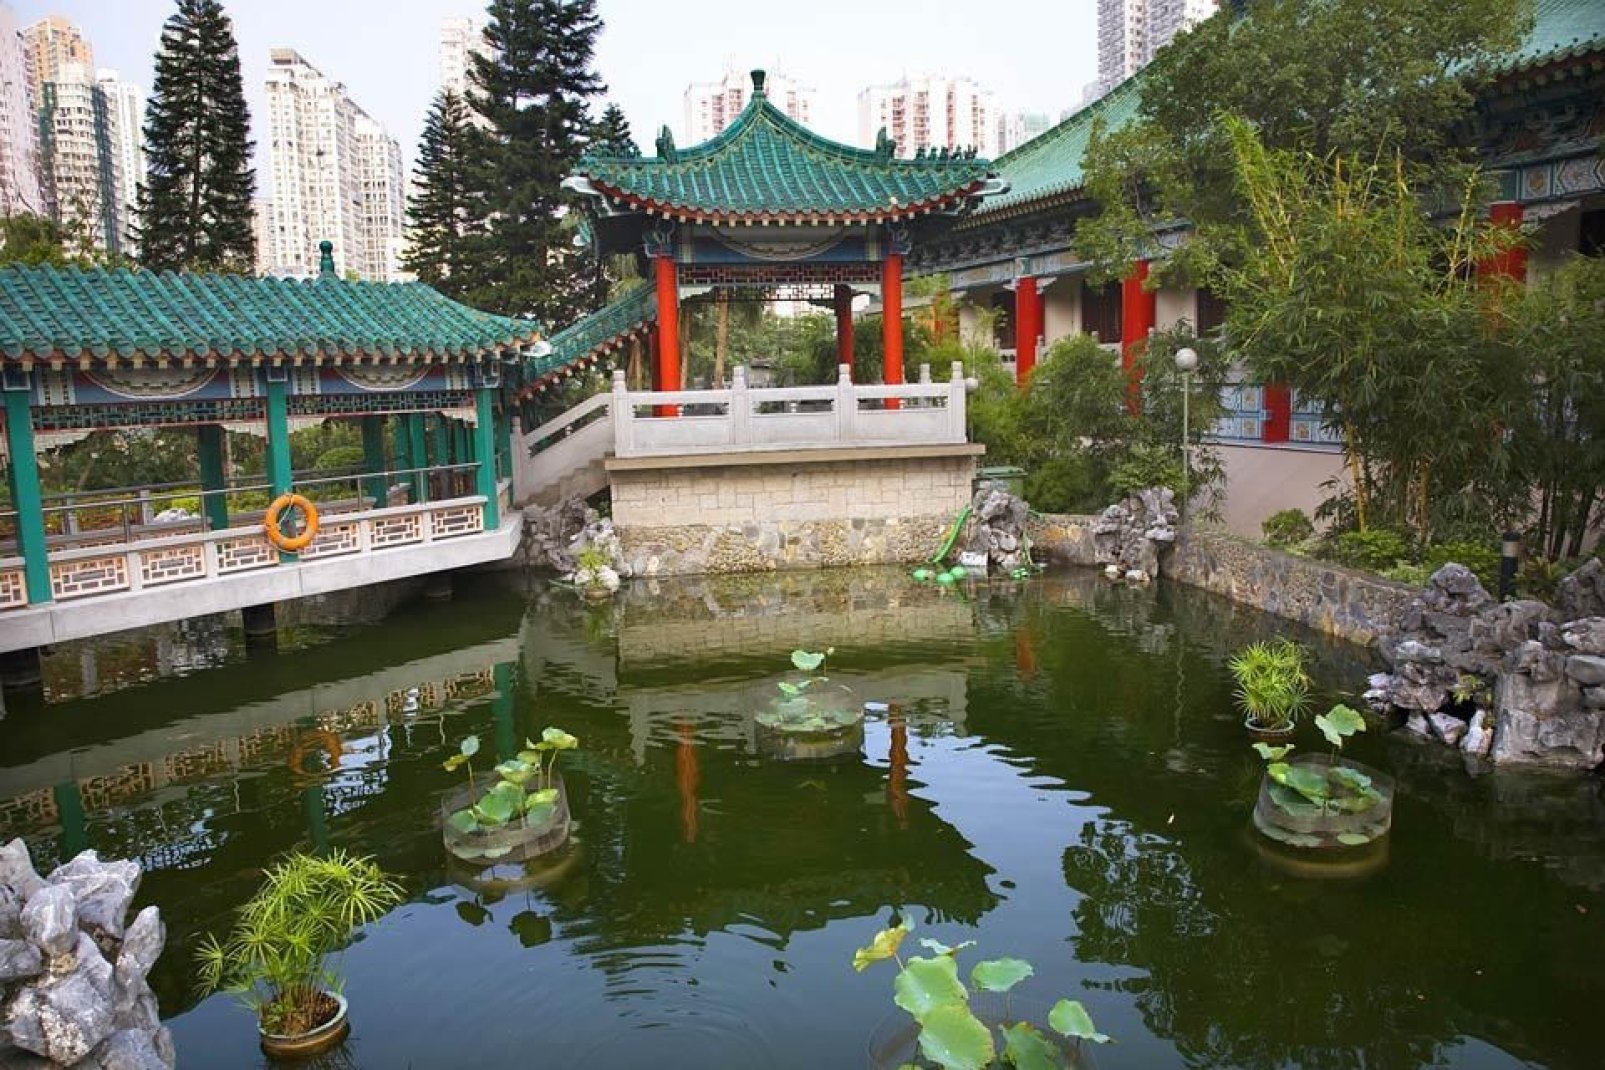 Questo tempio taoista molto popolare ospita numerosi visitatori in parte perché pare possa esaudire i desideri.